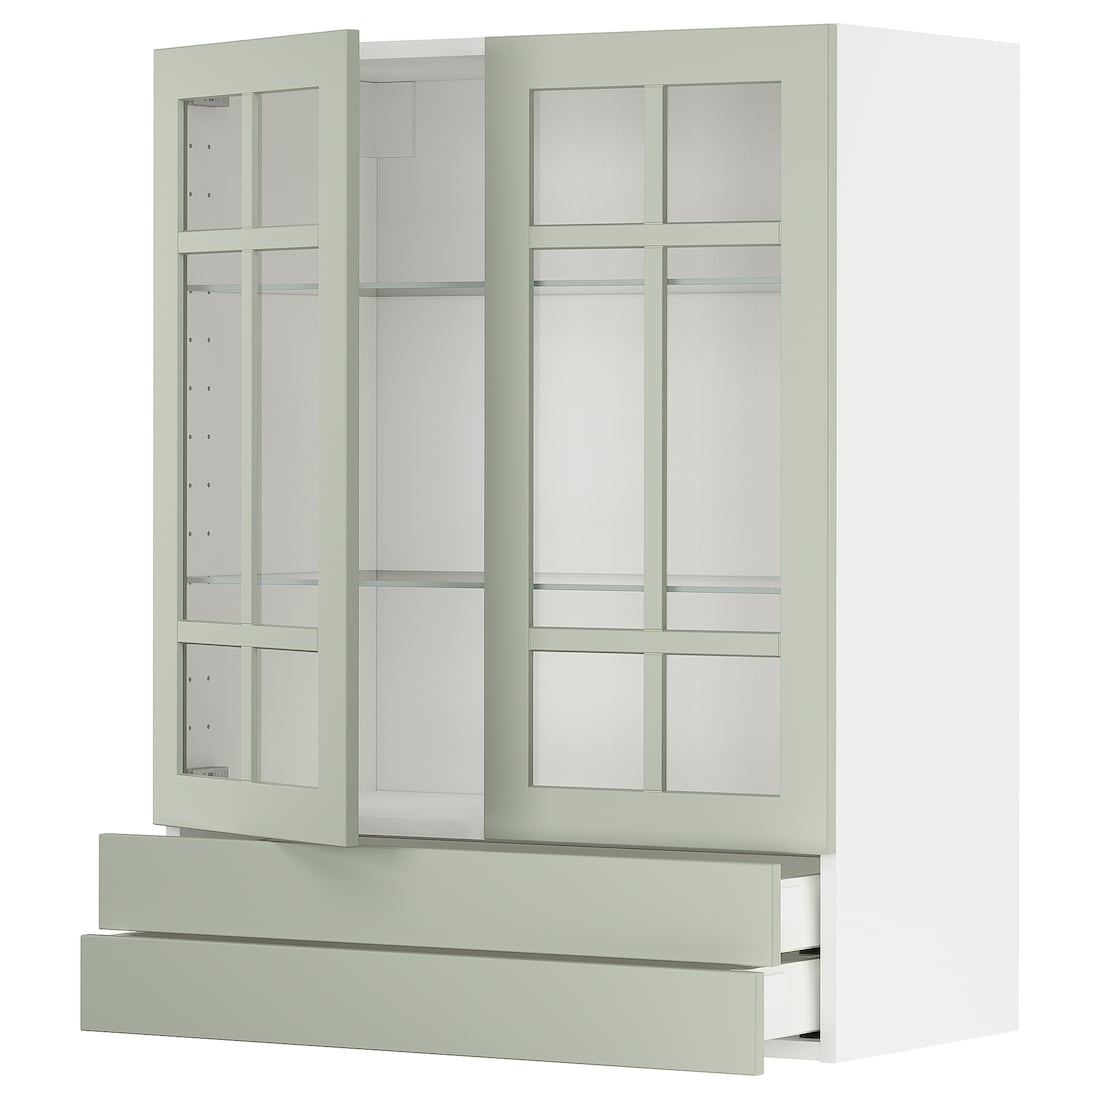 METOD МЕТОД / MAXIMERA МАКСИМЕРА Навесной шкаф / 2 стеклянные дверцы / 2 ящика, белый / Stensund светло-зеленый, 80x100 см